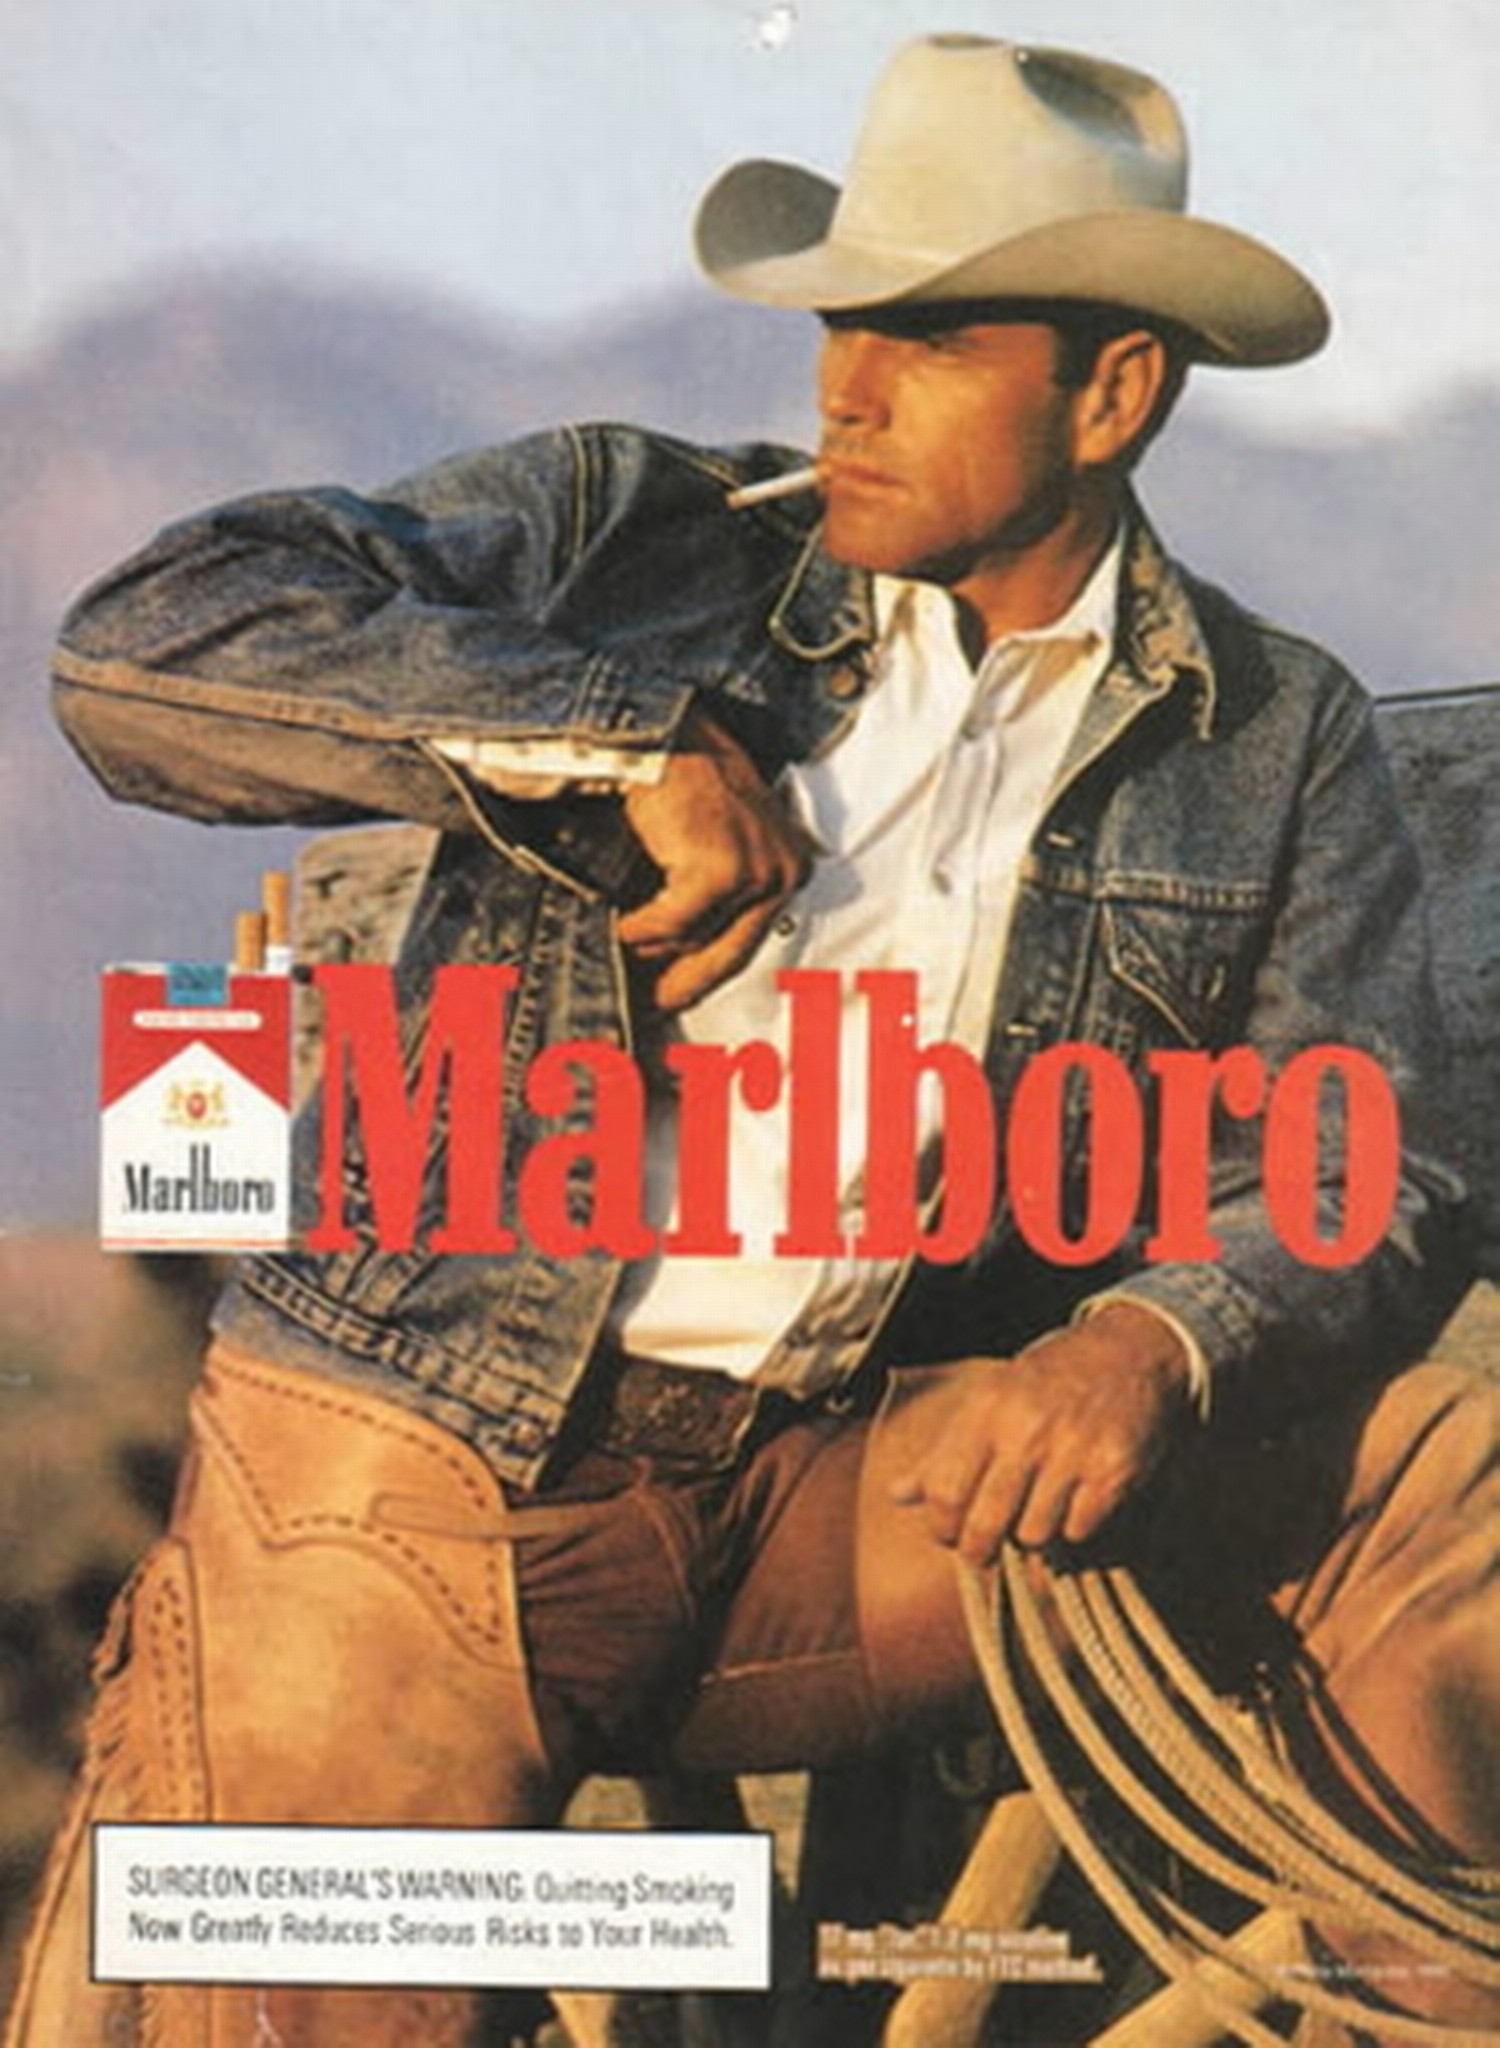 Ковбой мальборо реклама. Уэйн Макларен ковбой Мальборо. Реклама ковбой Мальборо Уэйн Макларен. Уэйн Макларен реклама Мальборо. Ковбой Мальборо реклама сигарет.